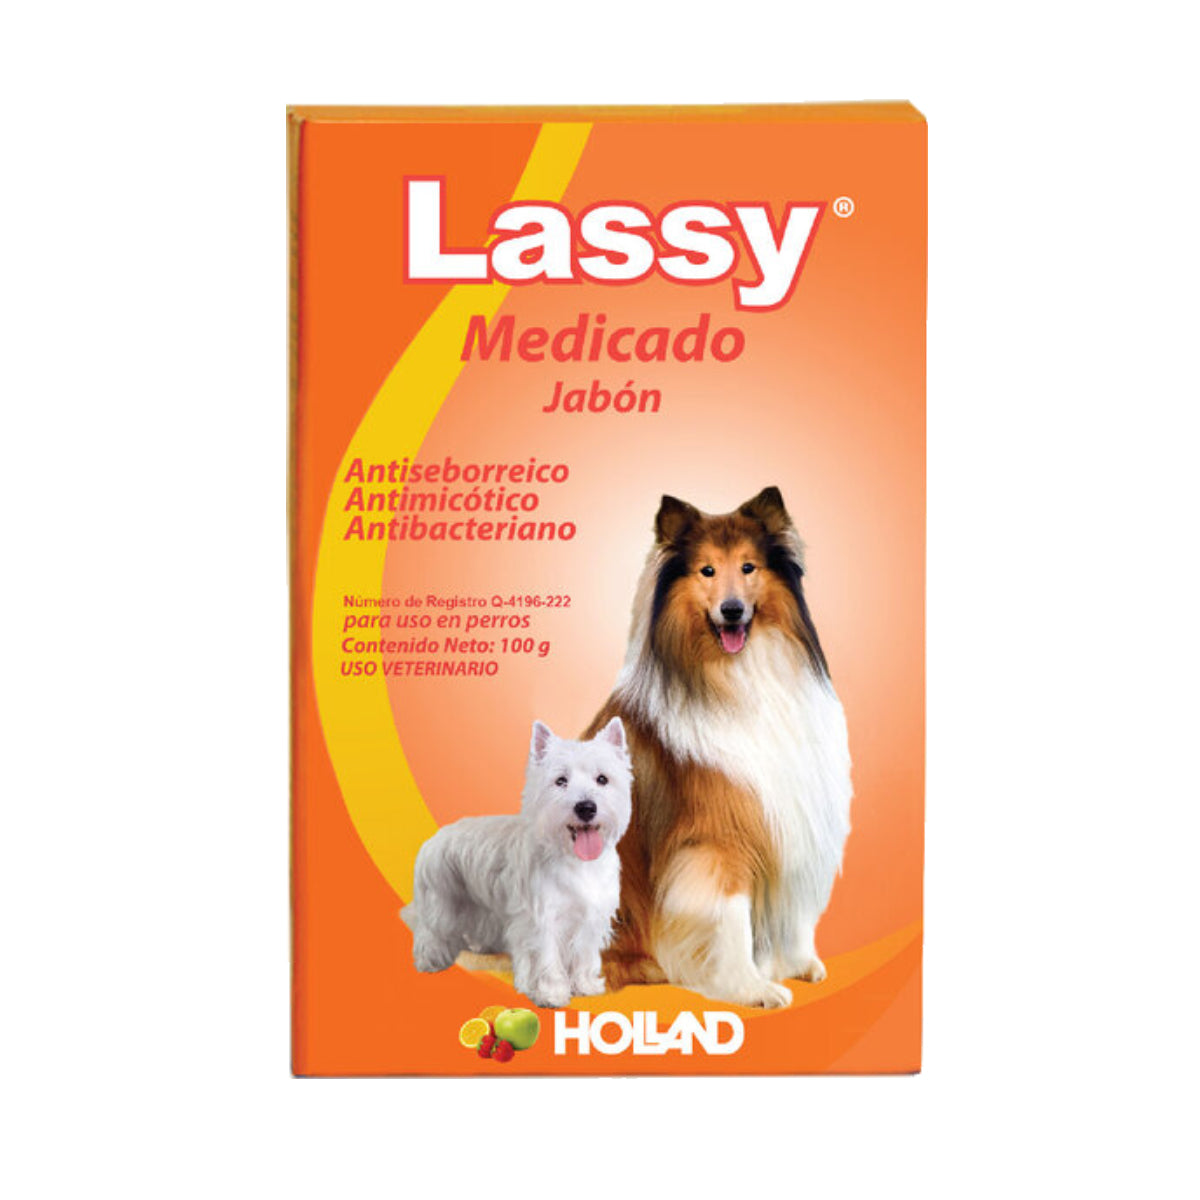 Jabón Medicado Lassy Holland 100 g